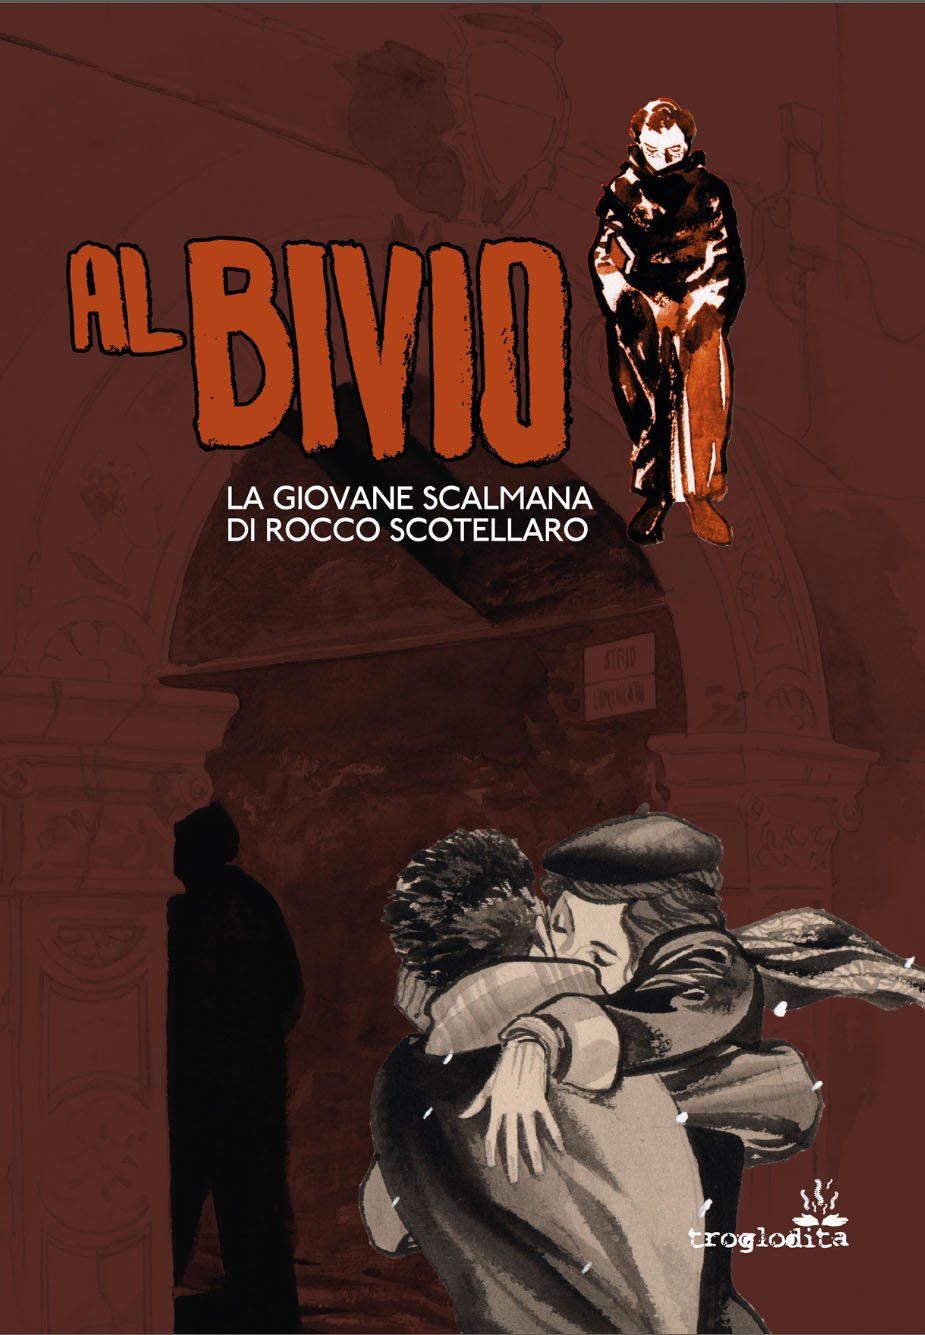 Image of AL BIVIO - La giovane scalmana di Rocco Scotellaro